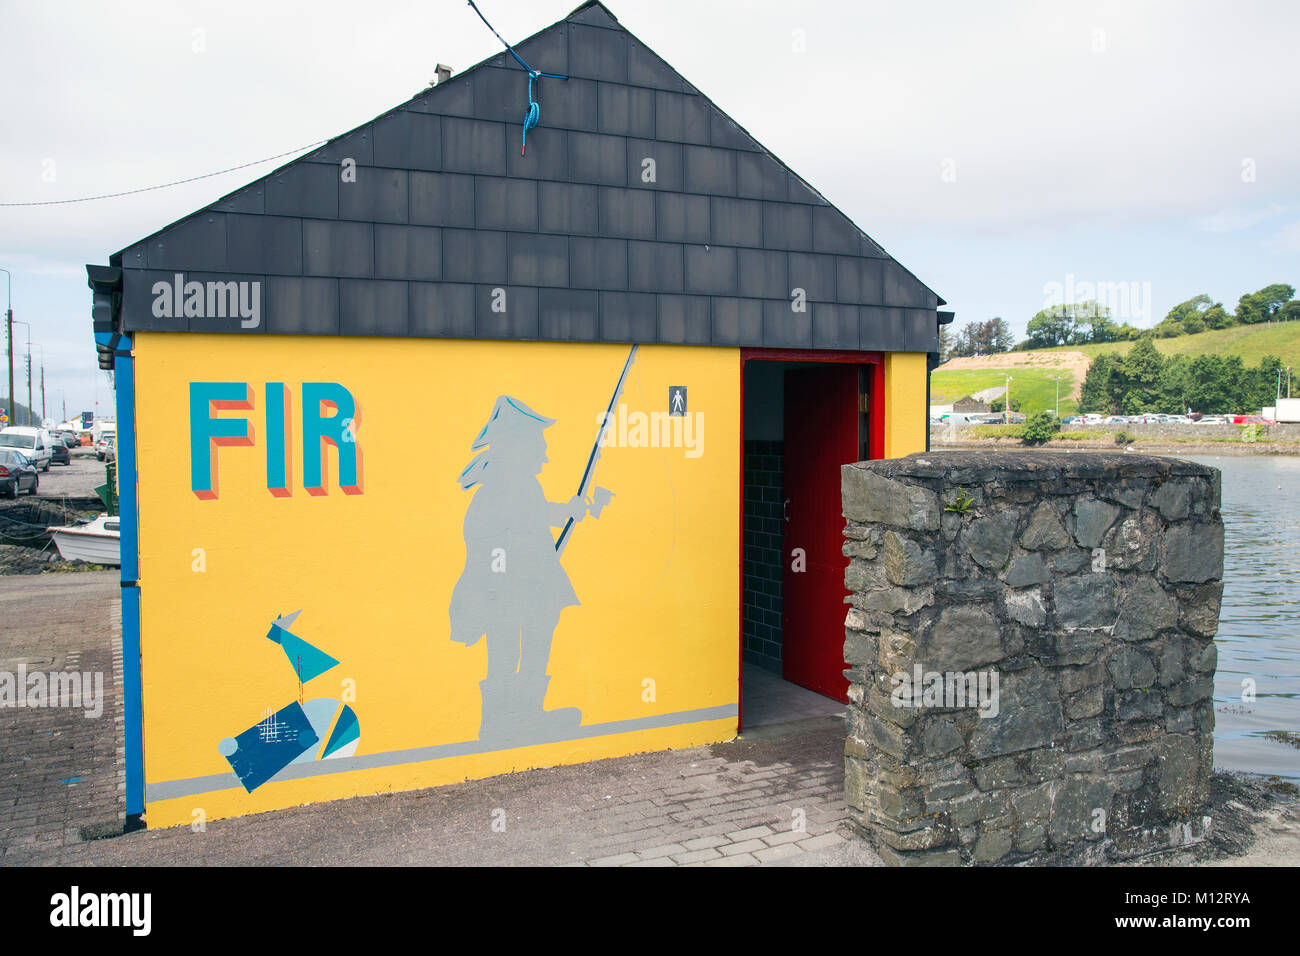 Toilettes publiques peint de couleurs vives, Bantry West Cork Irlande Banque D'Images